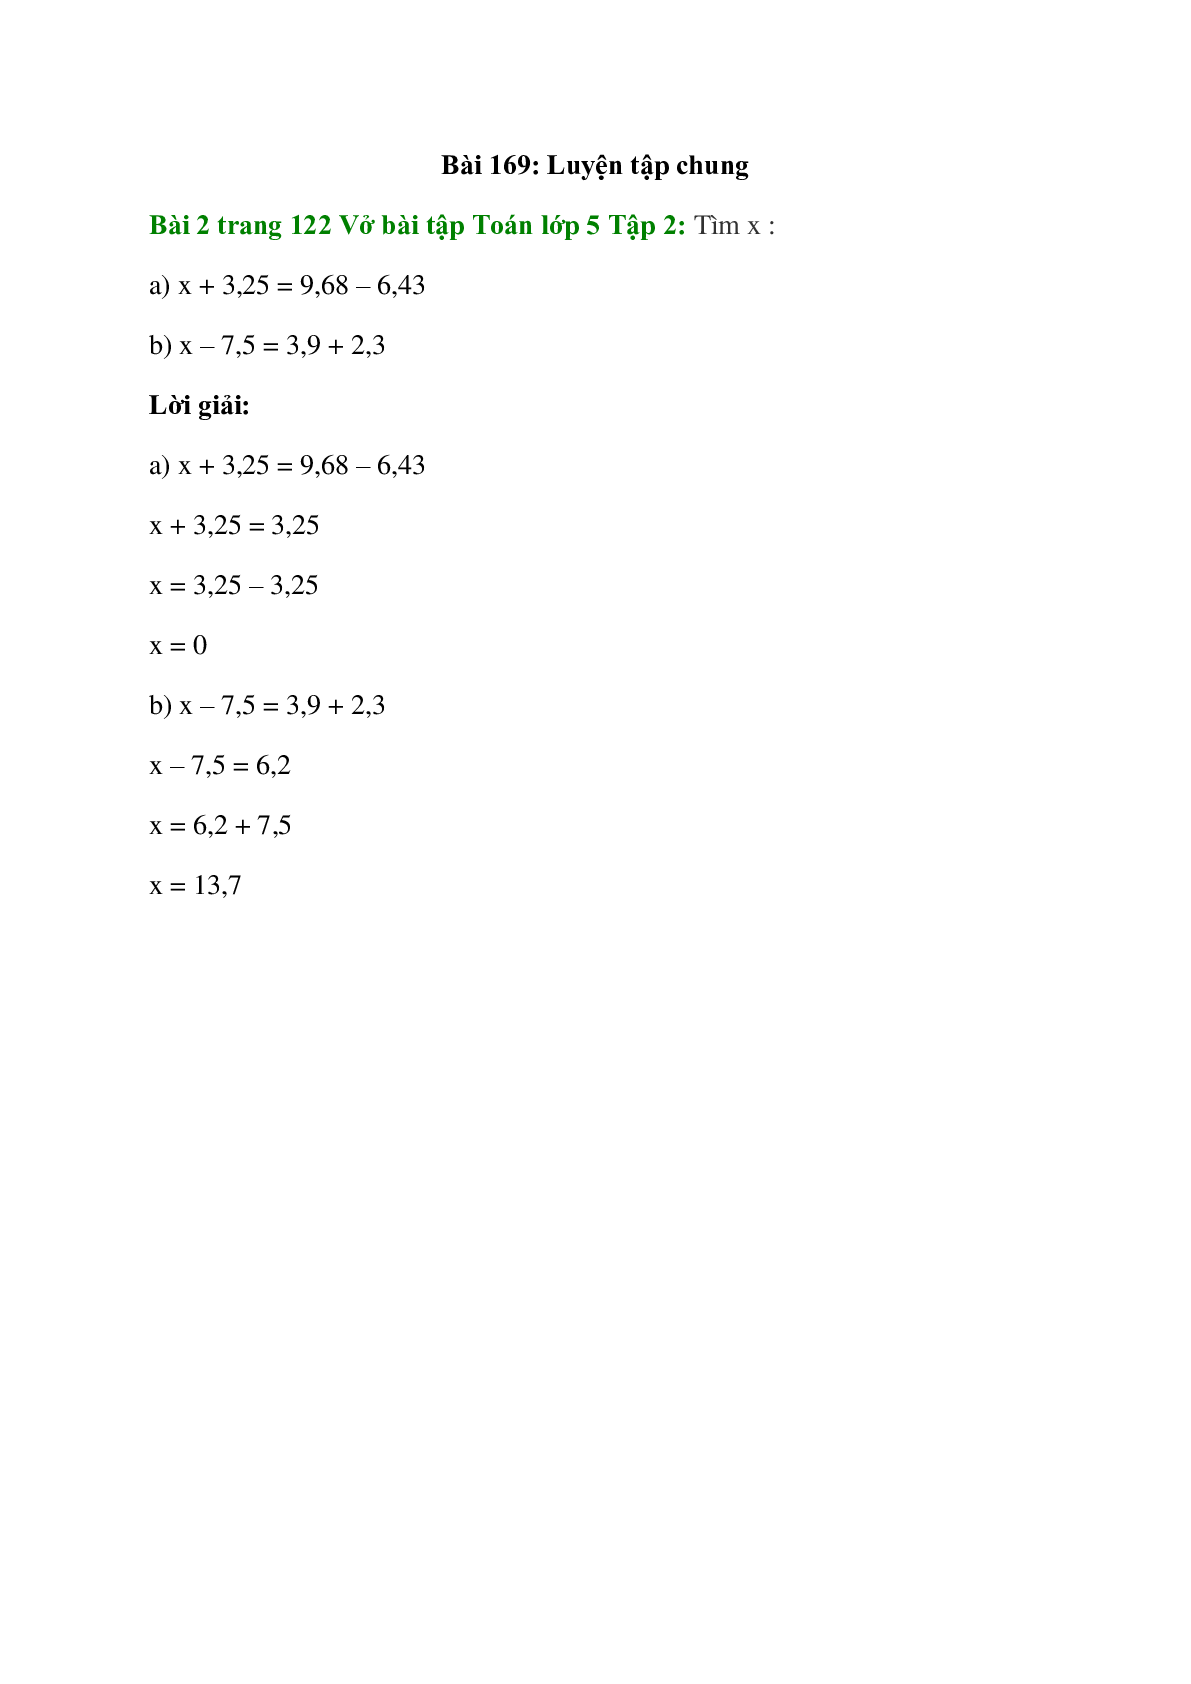 Tìm x: x + 3,25 = 9,68 – 6,43 (trang 1)